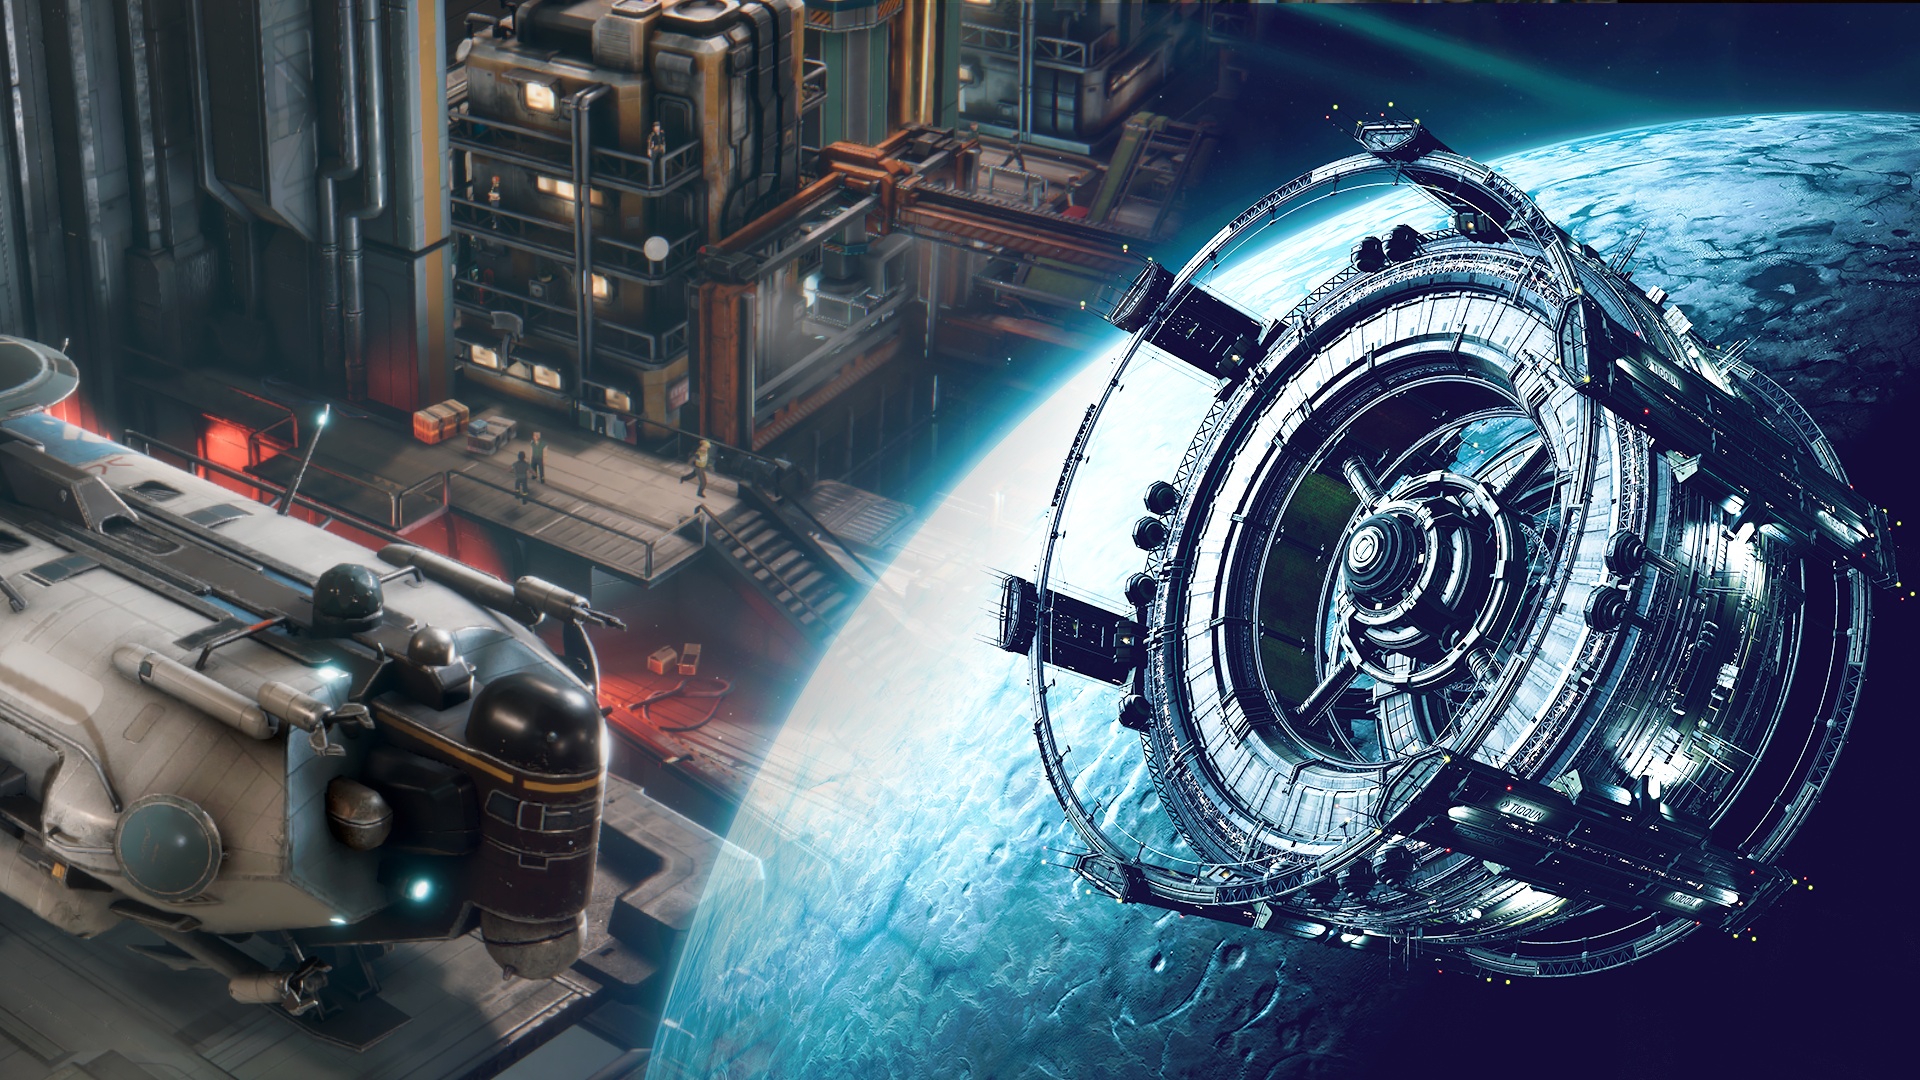 #Sci-Fi-Aufbauspiel Ixion geht jetzt einen unserer größten Test-Kritikpunkte per Update an